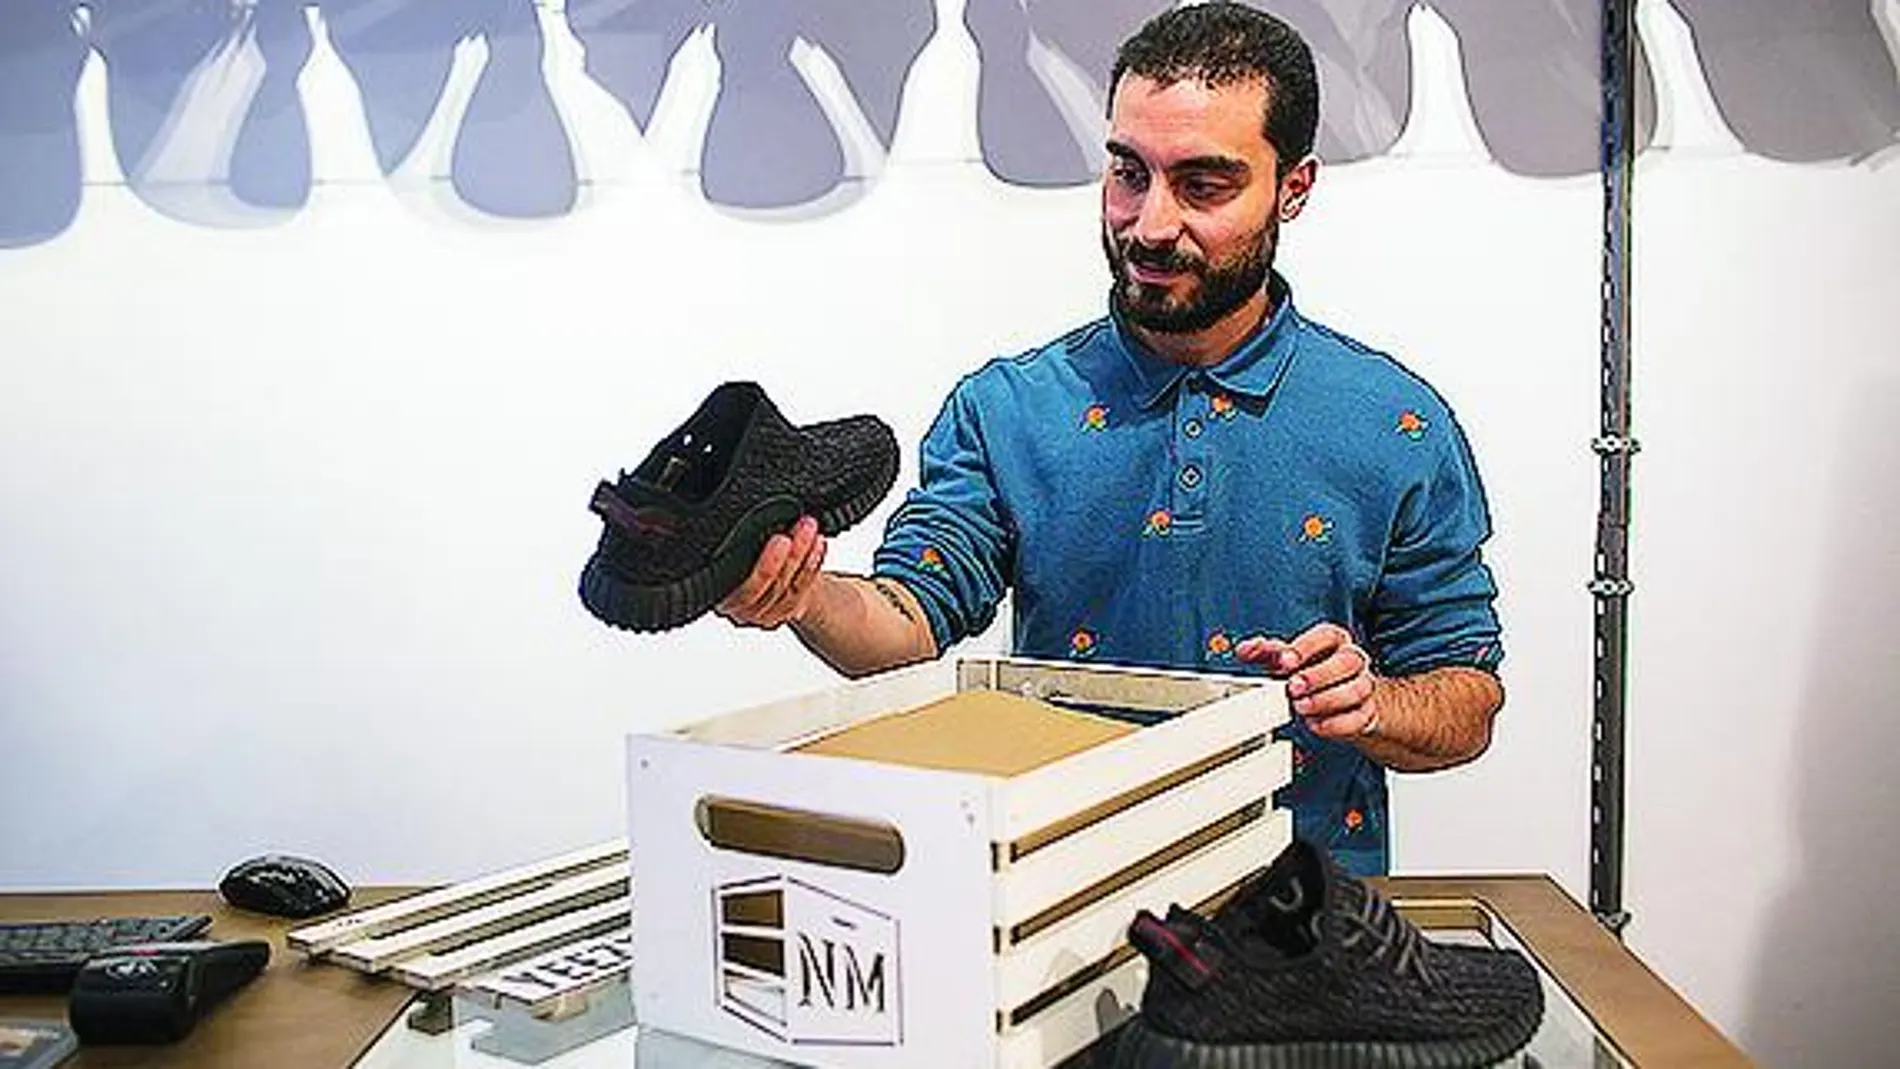 Francisco Pérez, uno de los responsables de Nigra Mercato, la tienda que sortea las zapatillas.